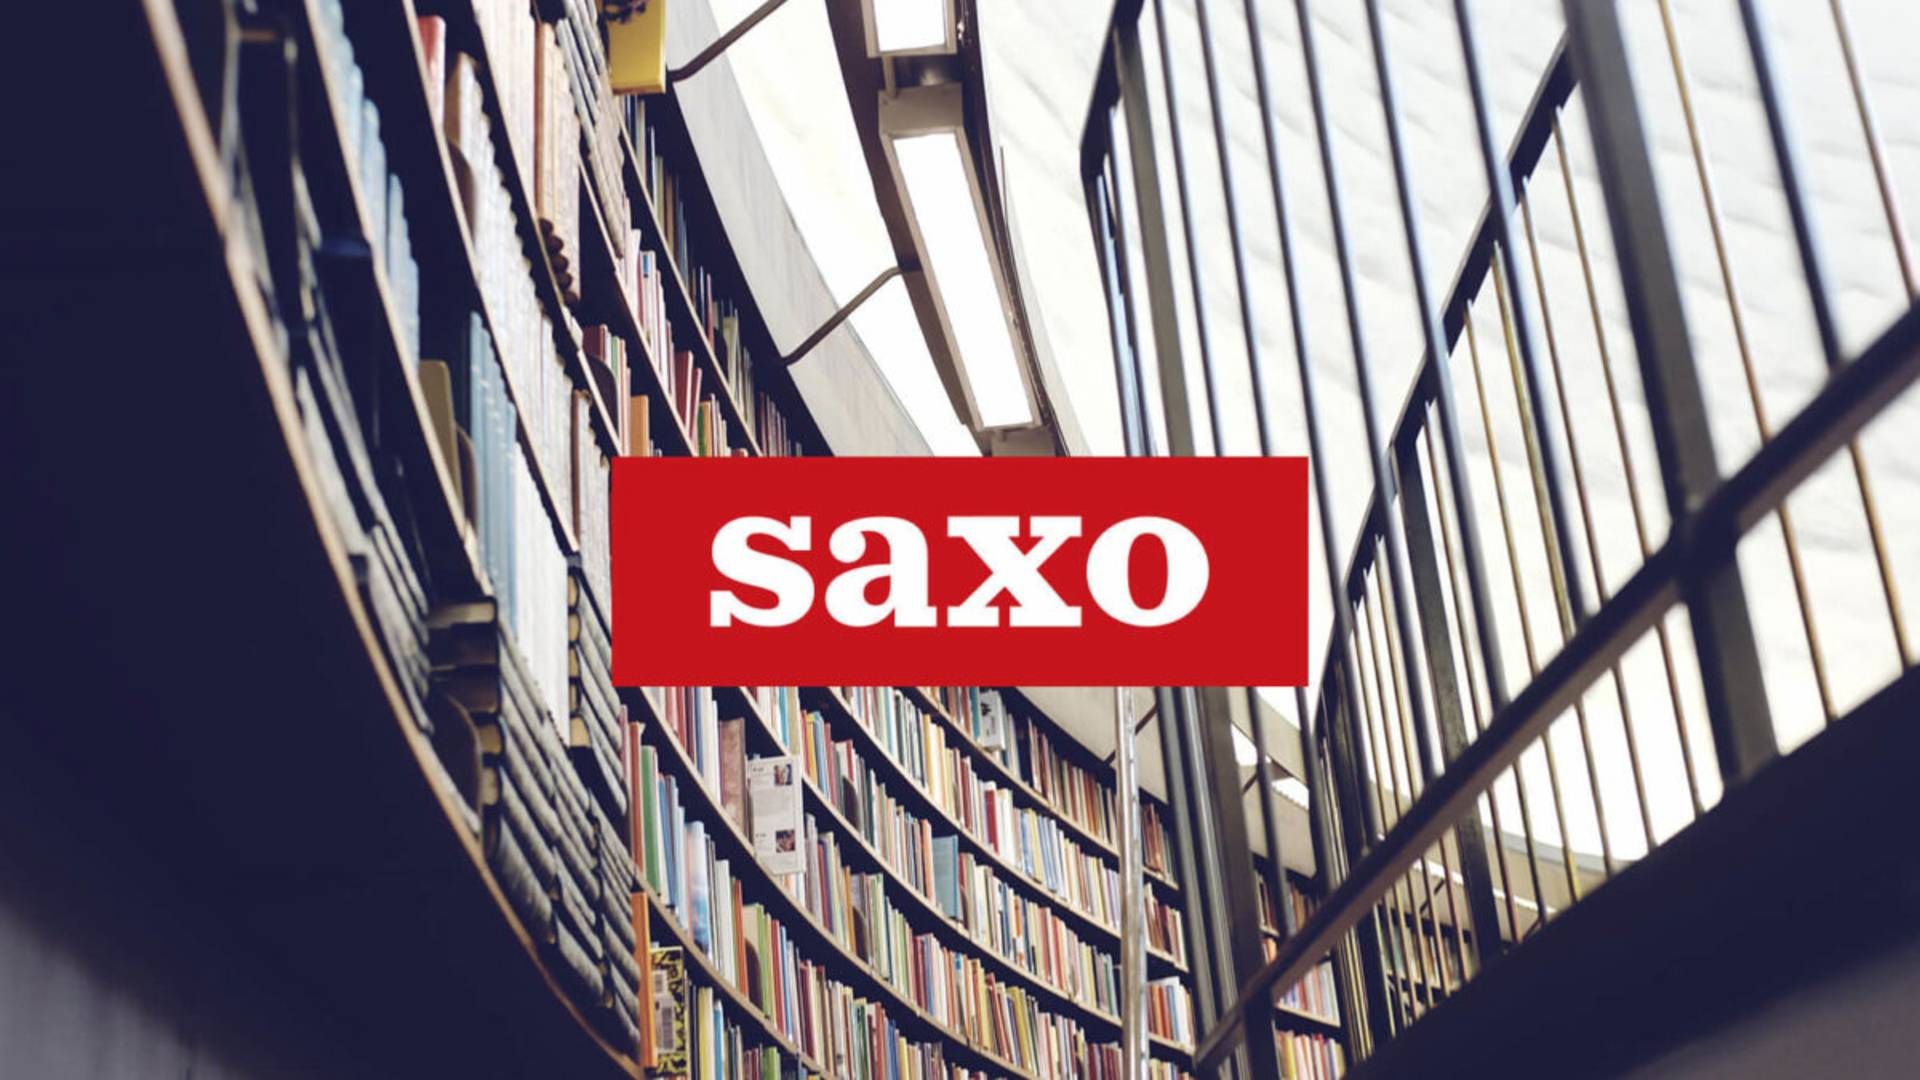 Saxo.com har eksisteret siden 2002. | Foto: PR/JP/Politikens Hus